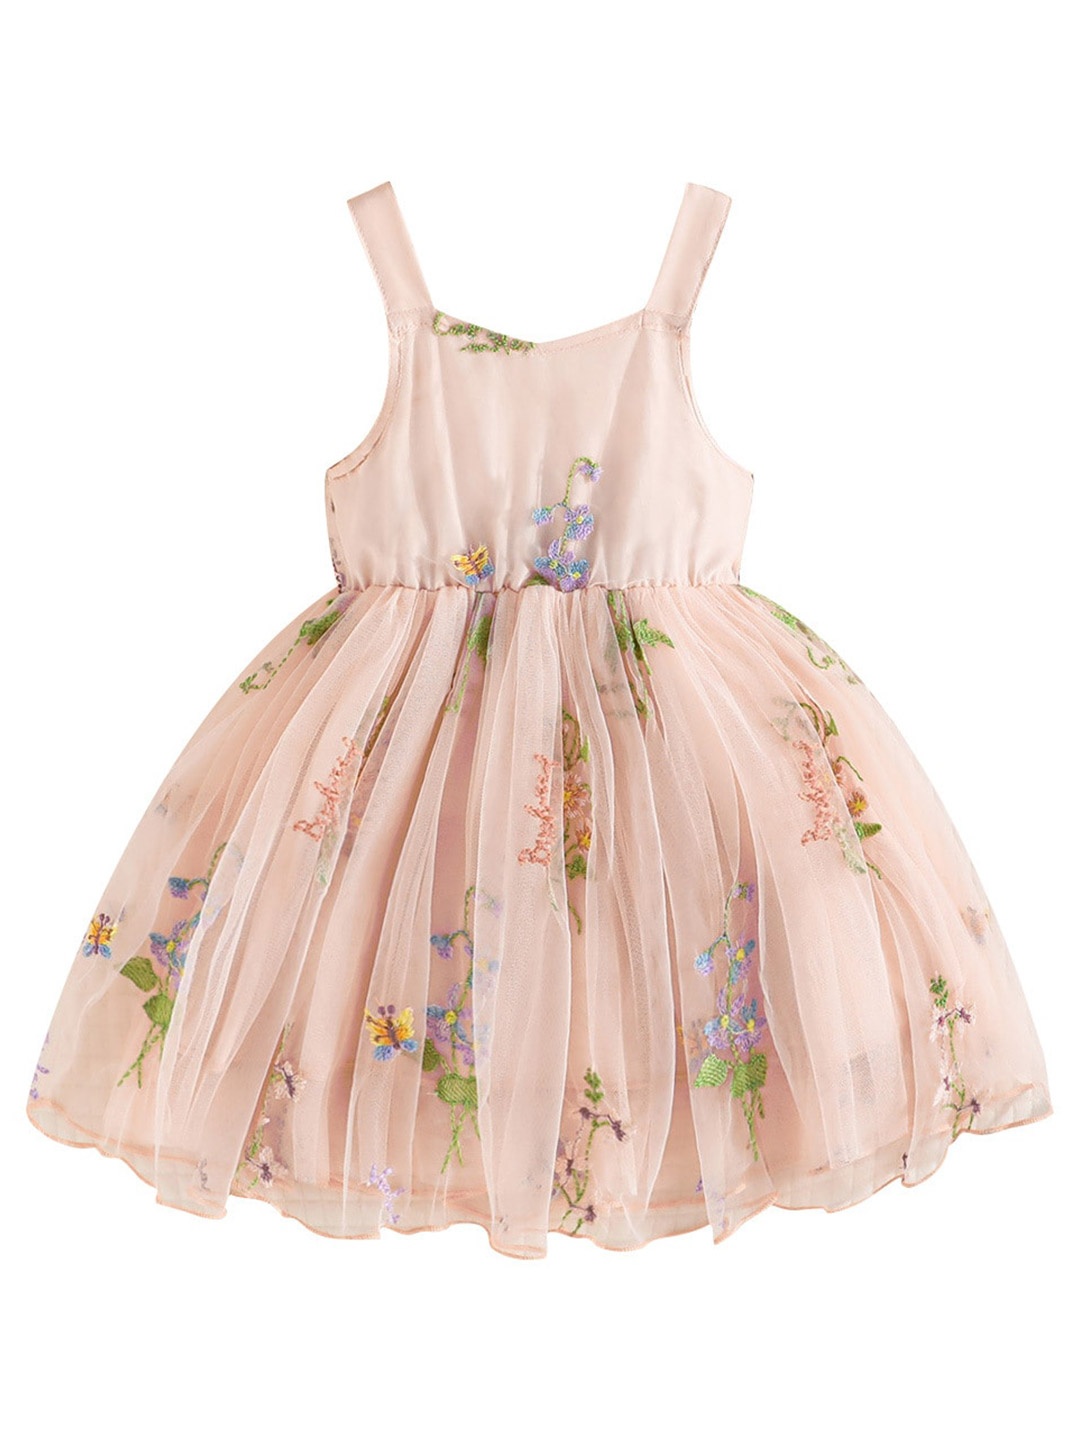 

StyleCast Infant Girls Pink Floral Printed Embellished Shoulder Straps Balloon Dress